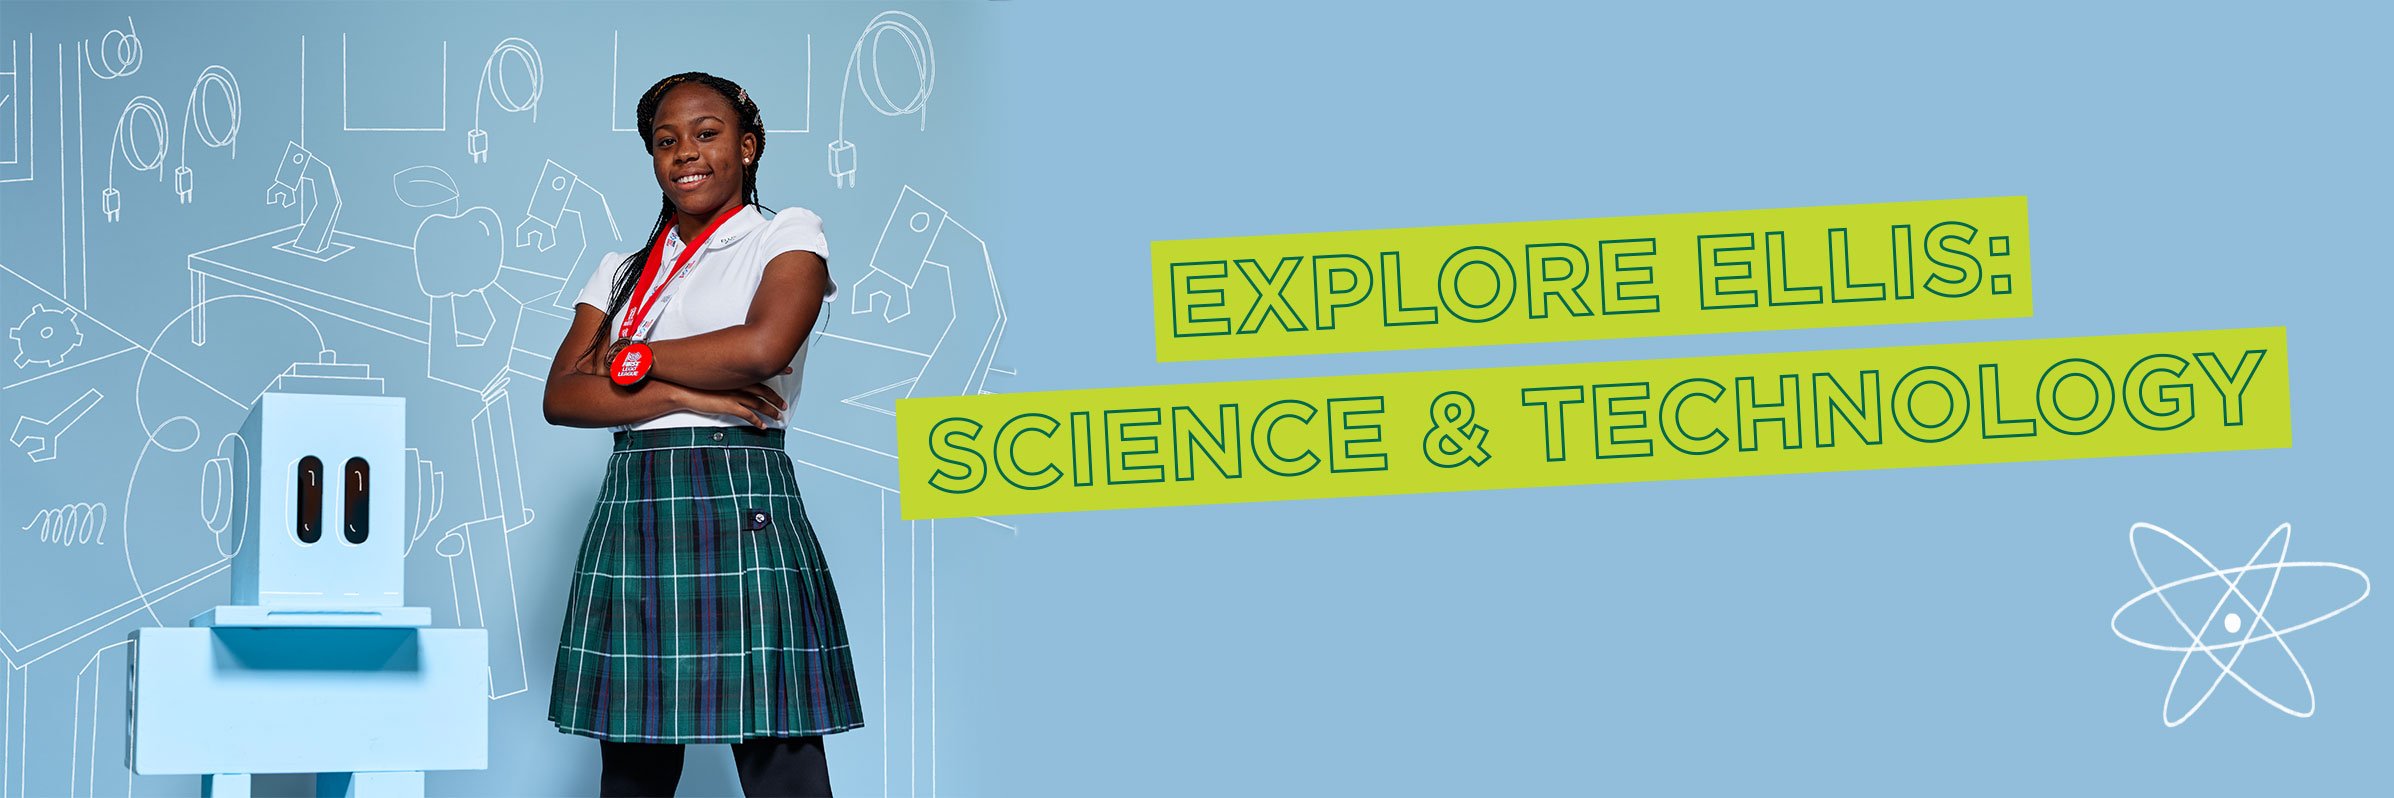 Explore Ellis: Science & Technology